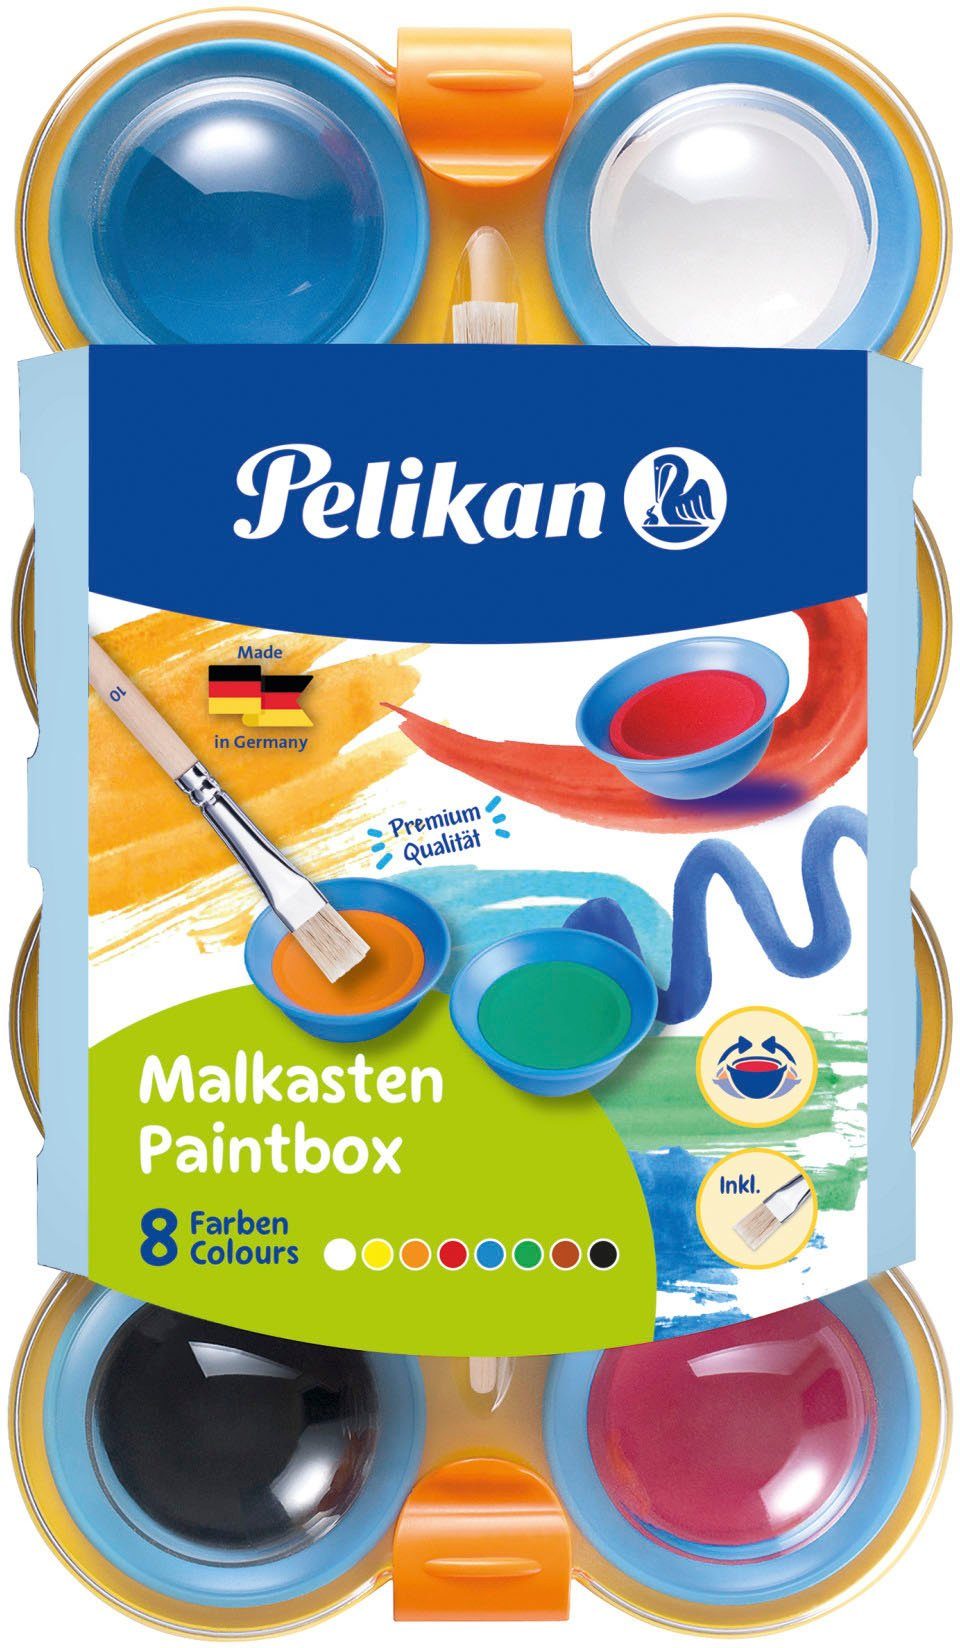 Farbkasten Made Farbkasten inklusive Pinsel; in für Germany Farben, 8 Kinder, Pelikan